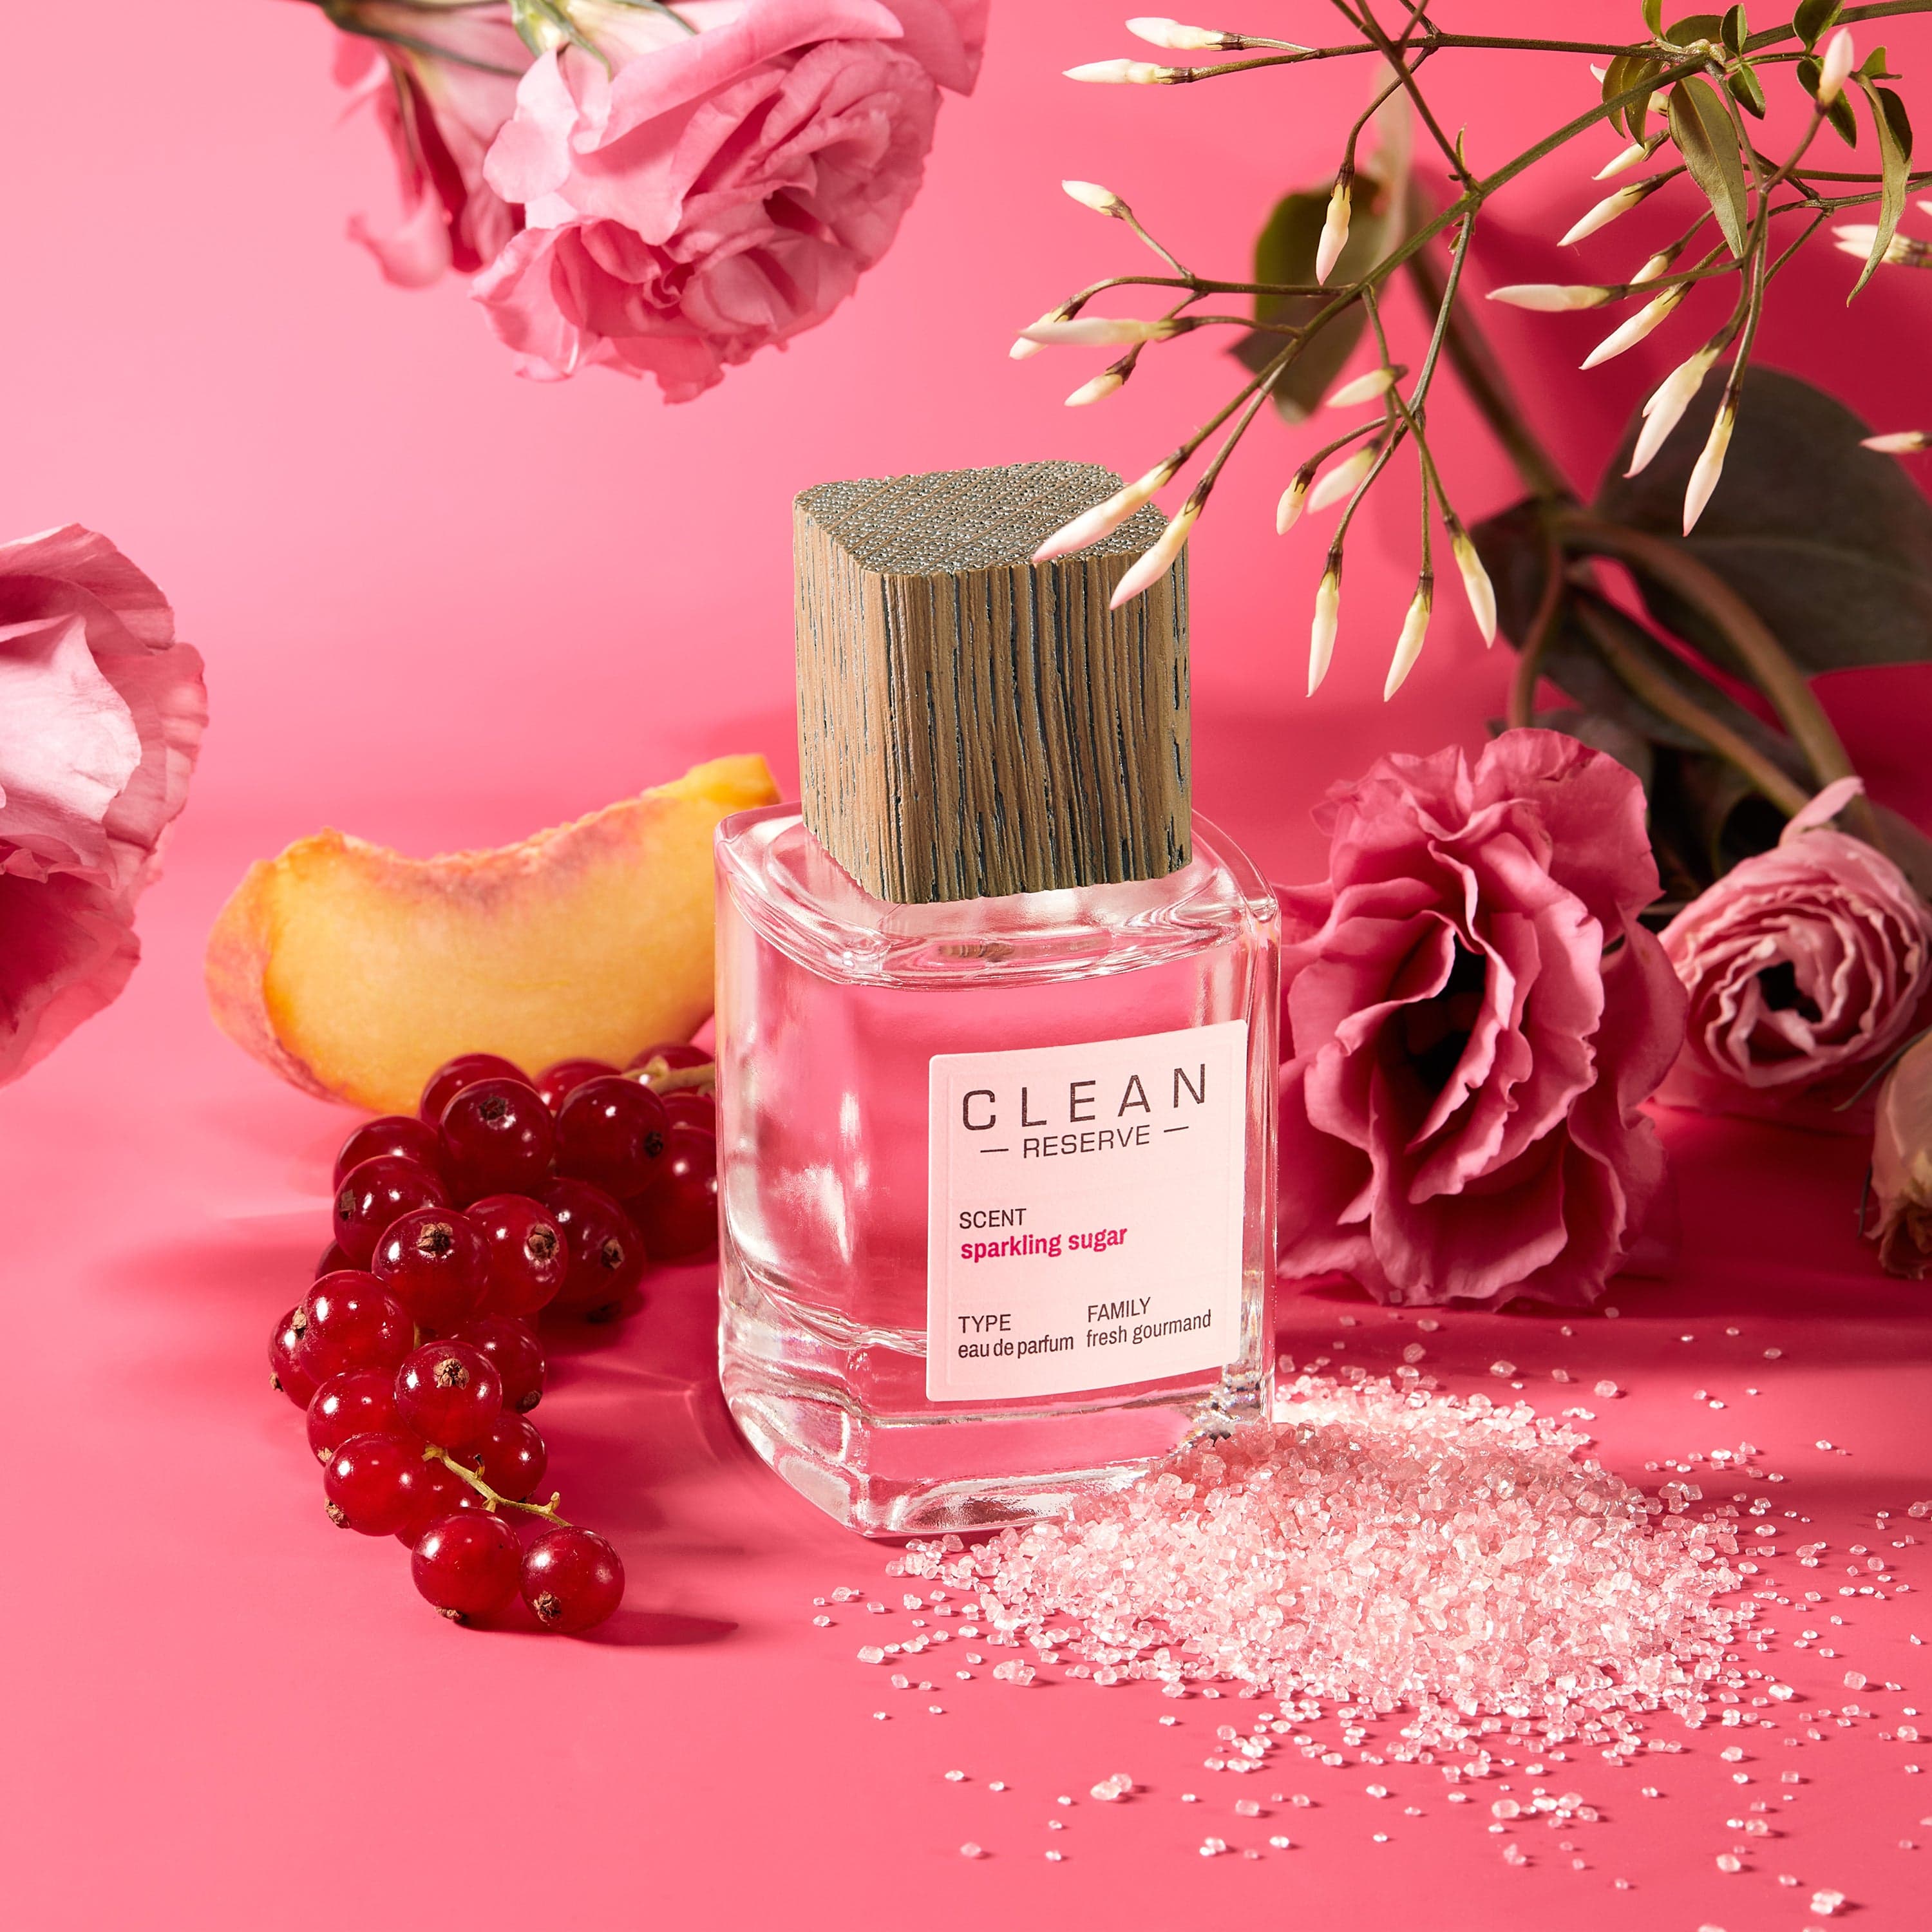 Pink Sugar - Eau de Toilette (Eau de Toilette) » Reviews & Perfume